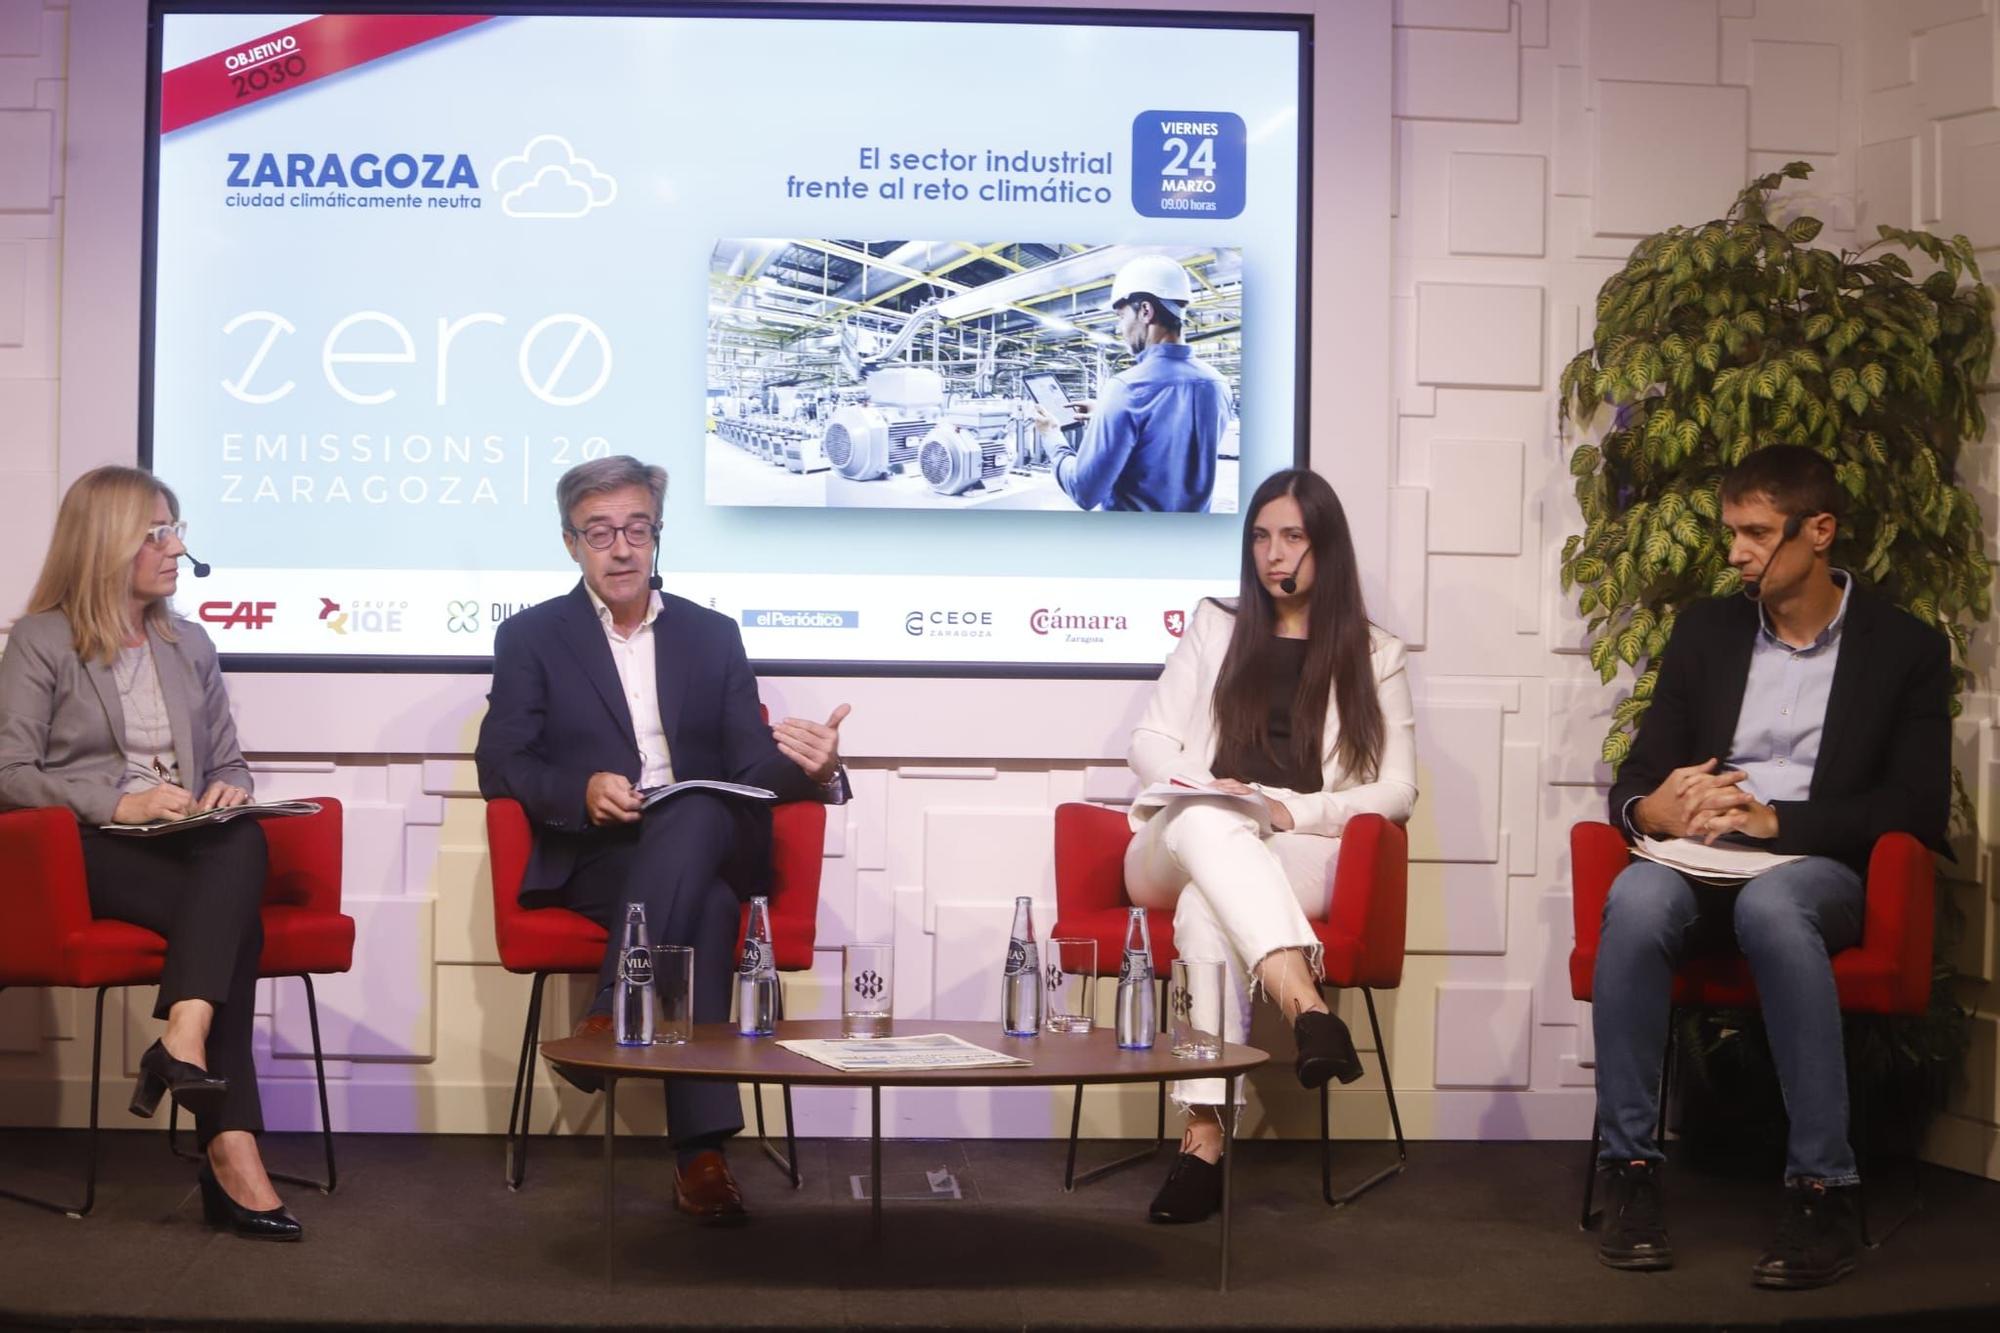 Fotogalería | La industria de Zaragoza, ante el reto climático